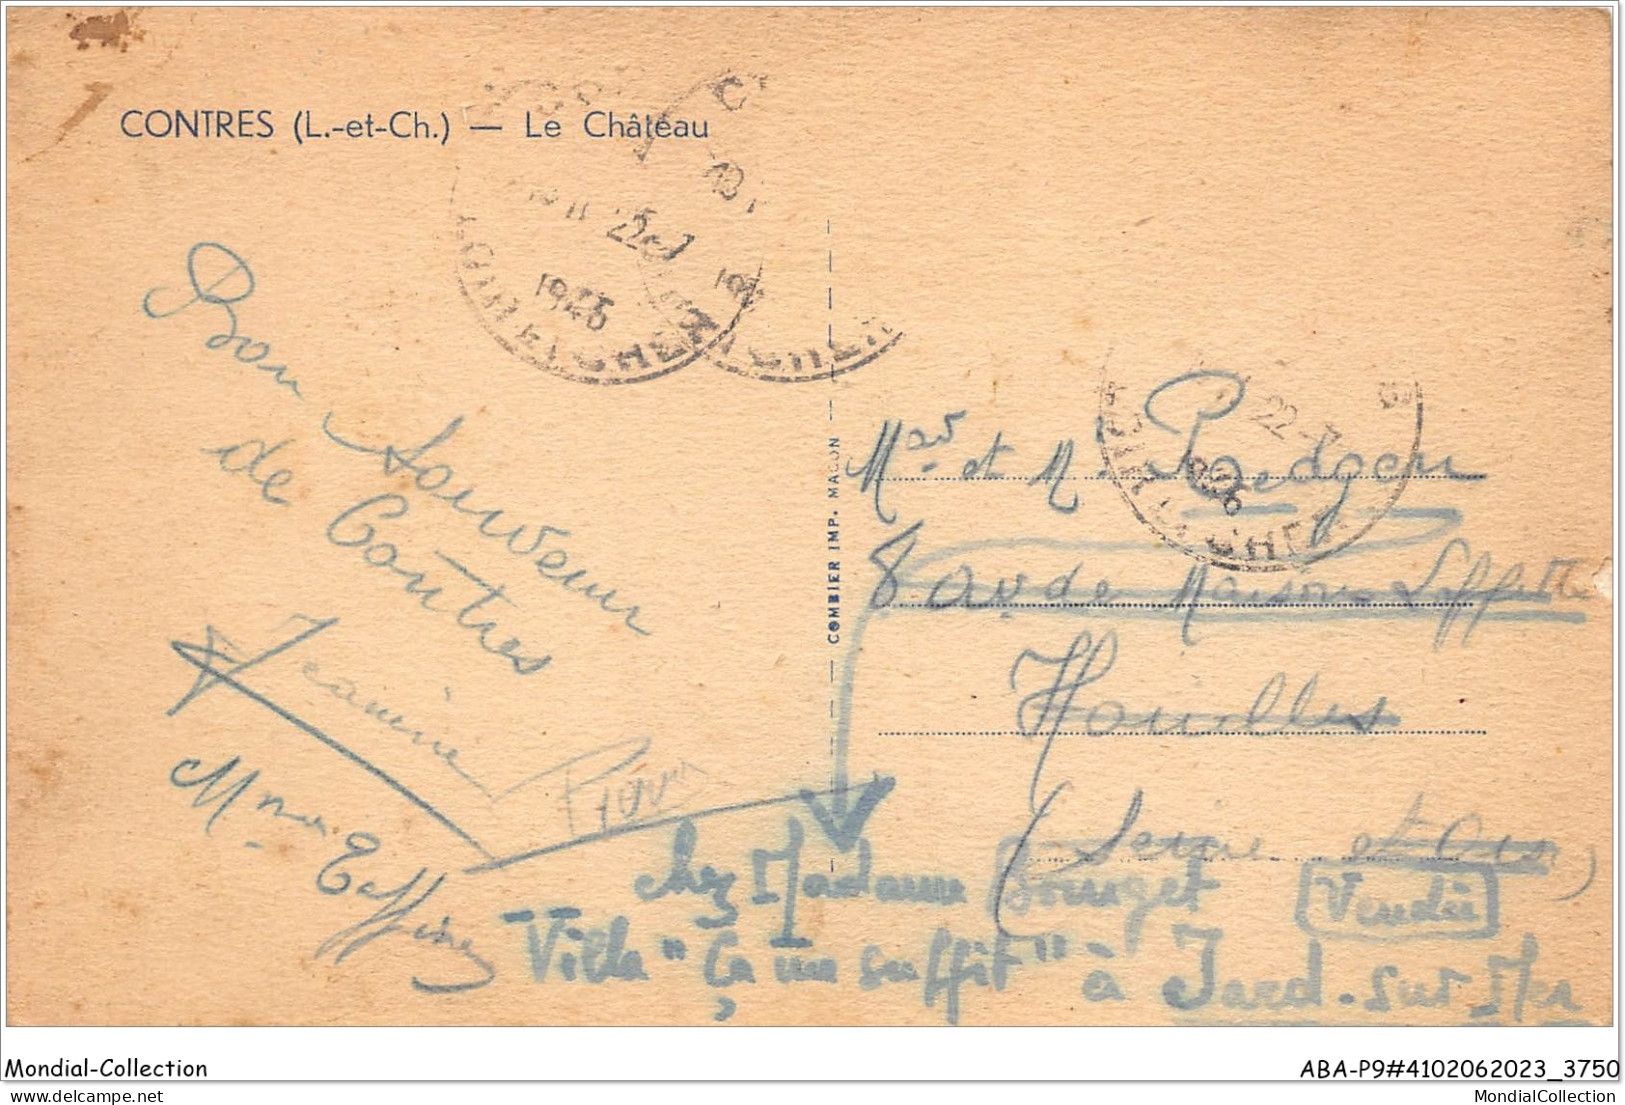 ABAP9-41-0816 - CONTRES - Le Chateau  - Contres